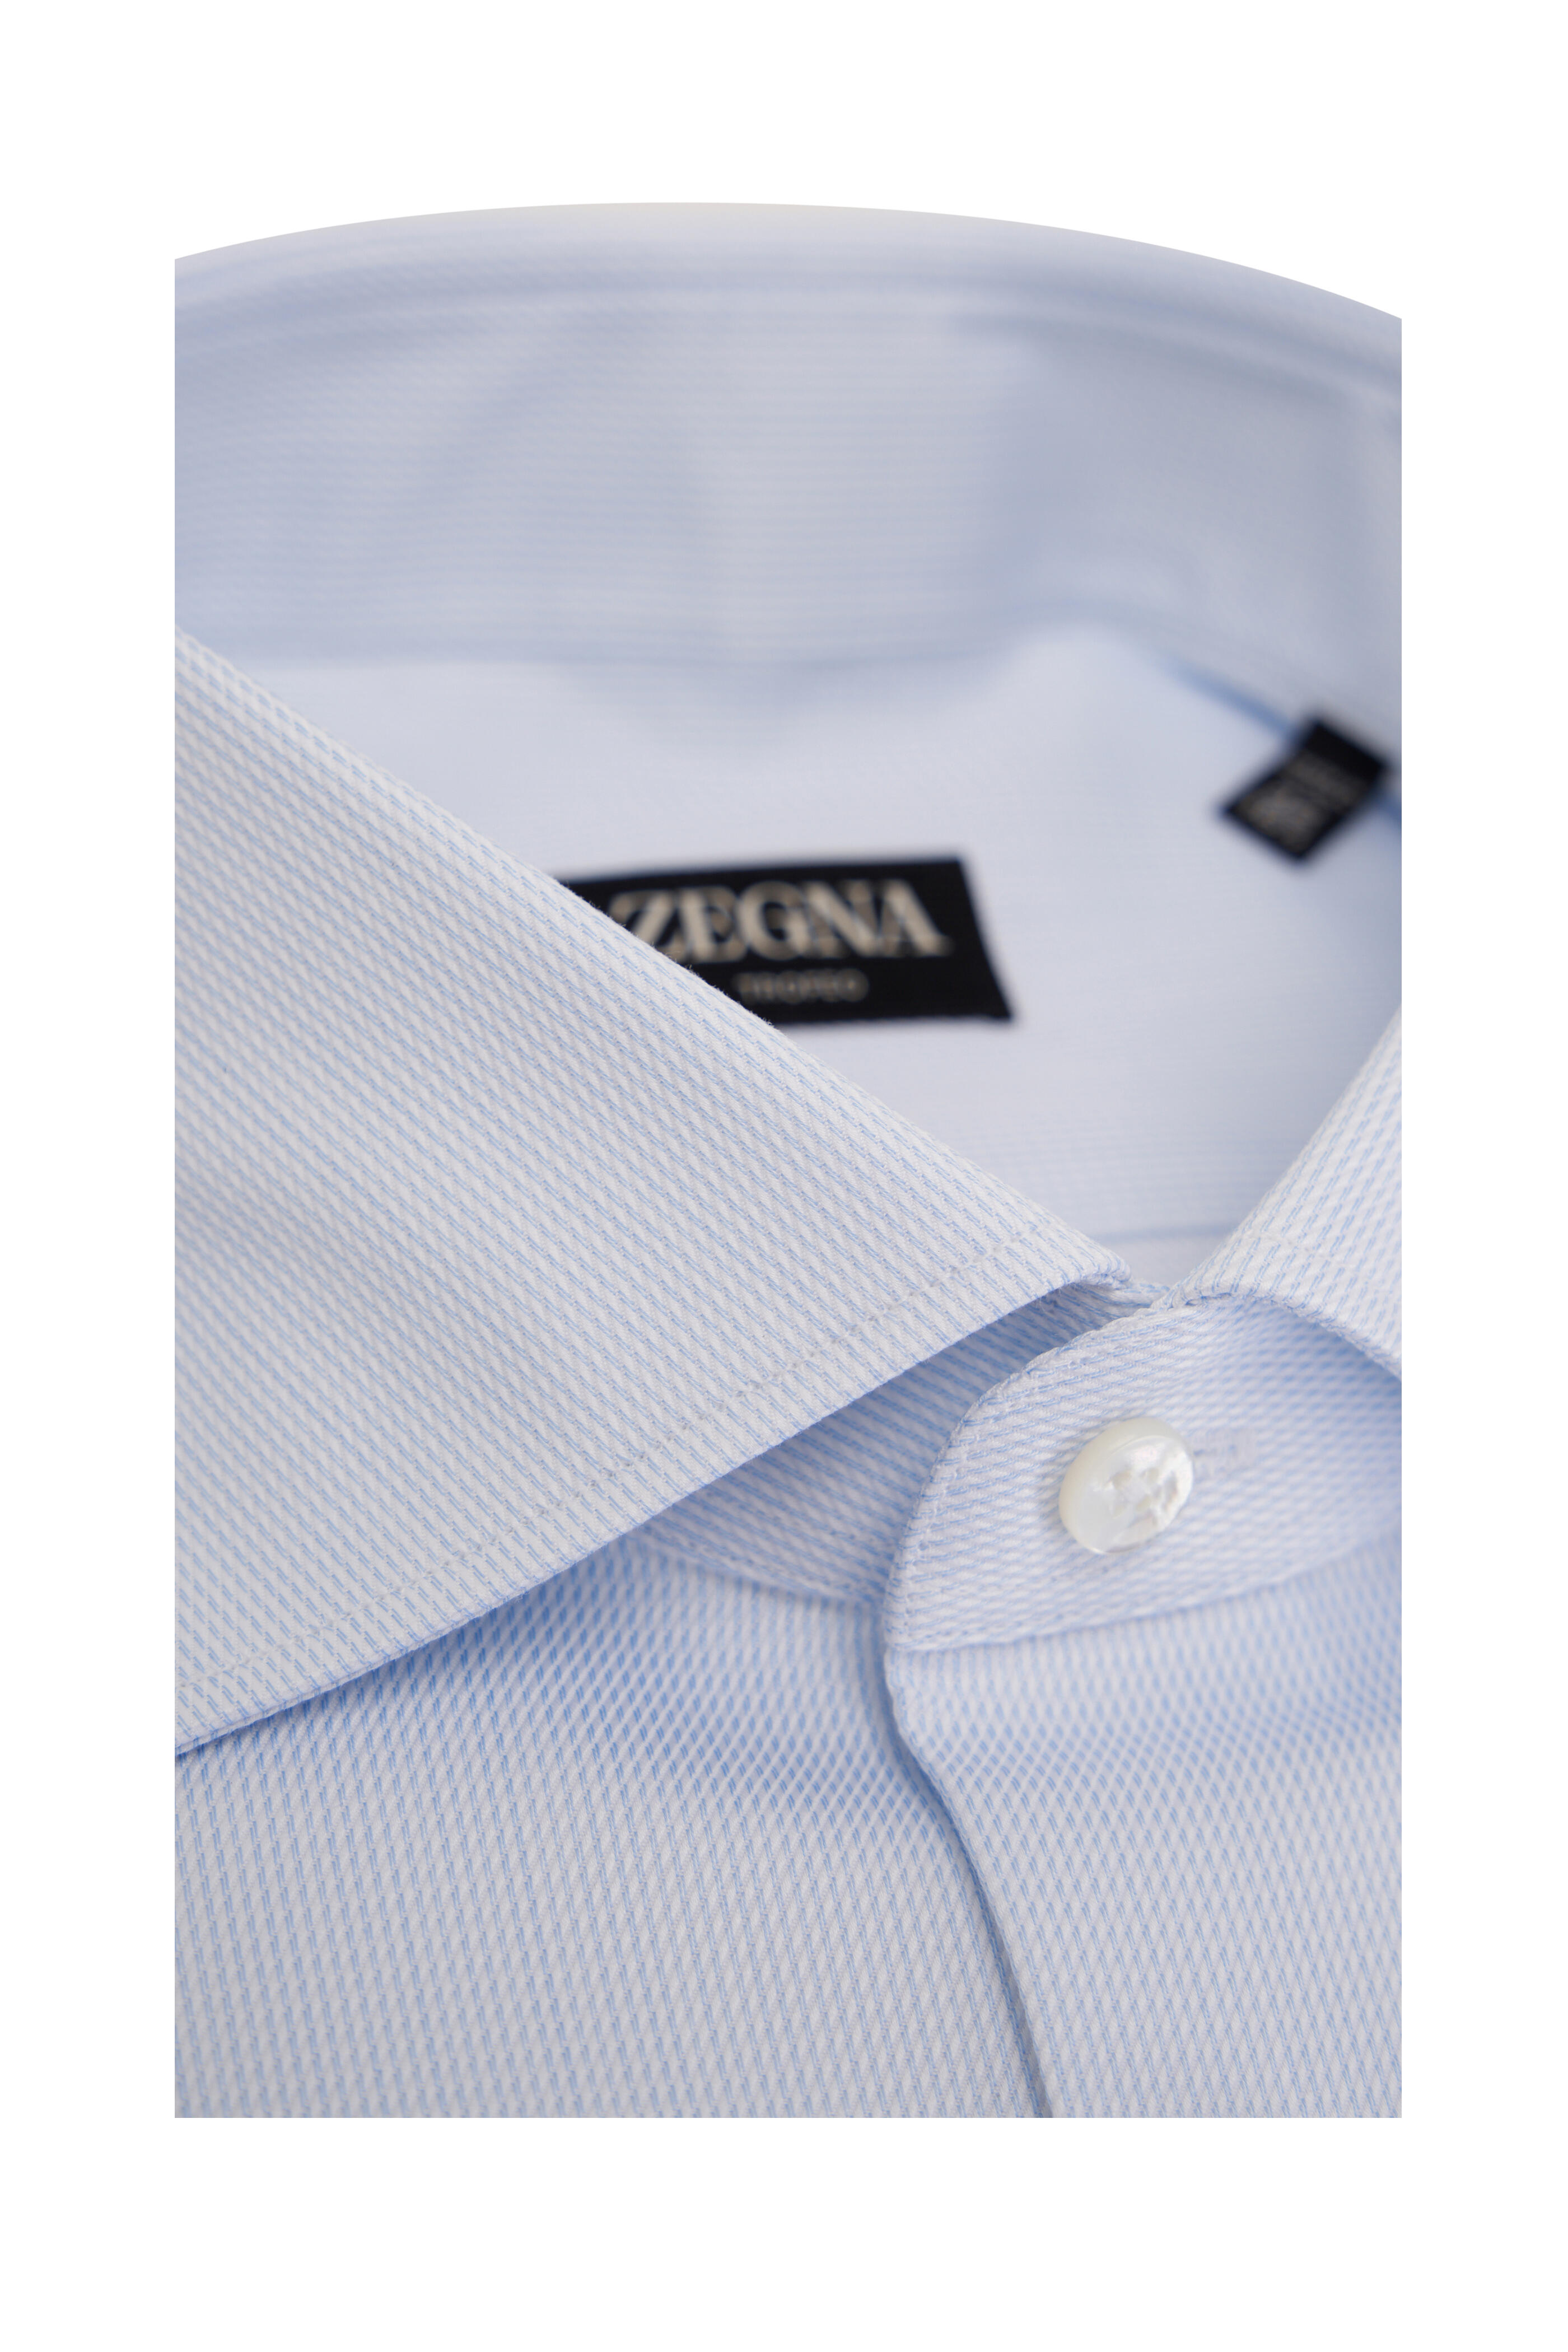 Zegna - Light Blue & White Textured Cotton Dress Shirt